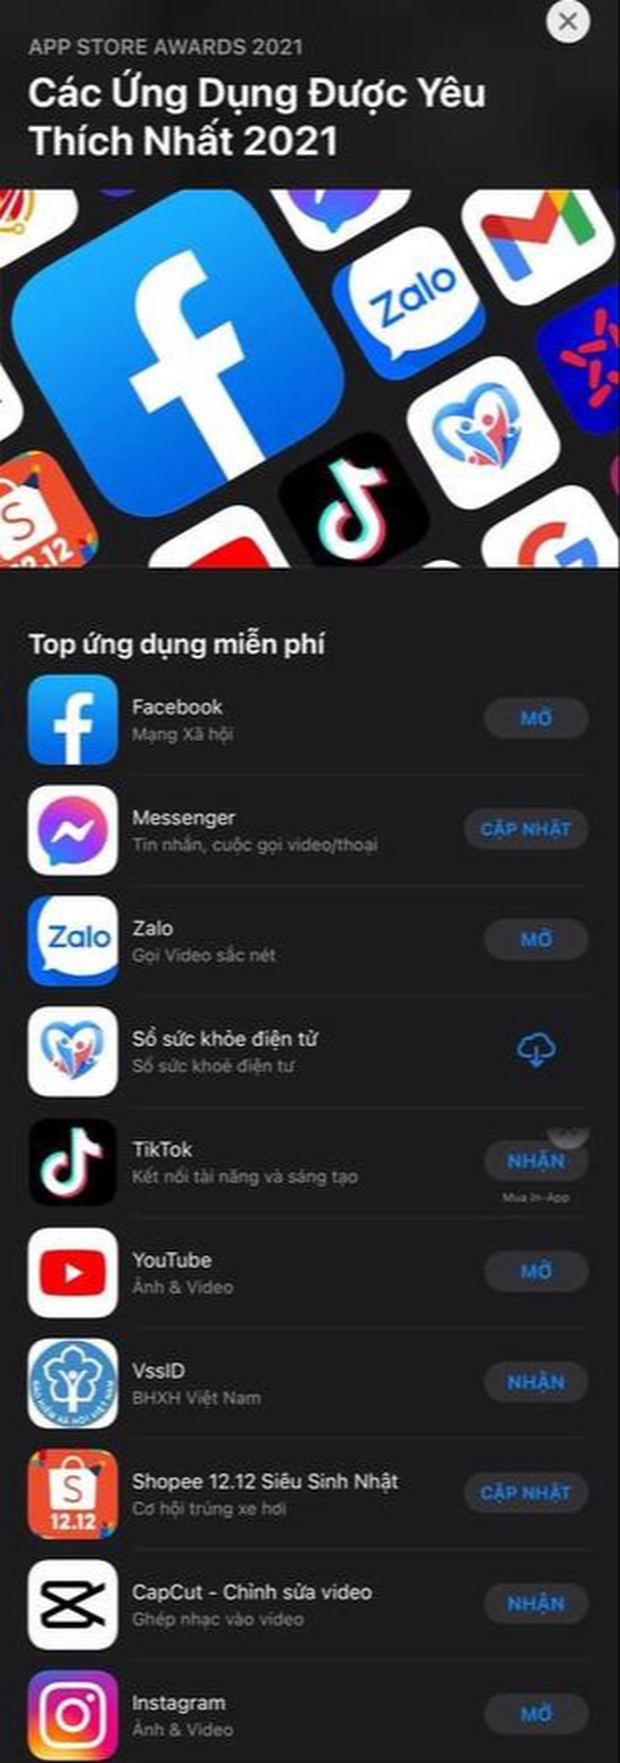 Ứng dụng Việt bất ngờ vượt mặt cả TikTok, YouTube lẫn Instagram trong danh sách ứng dụng được yêu thích nhất trên App Store 2021 - Ảnh 1.